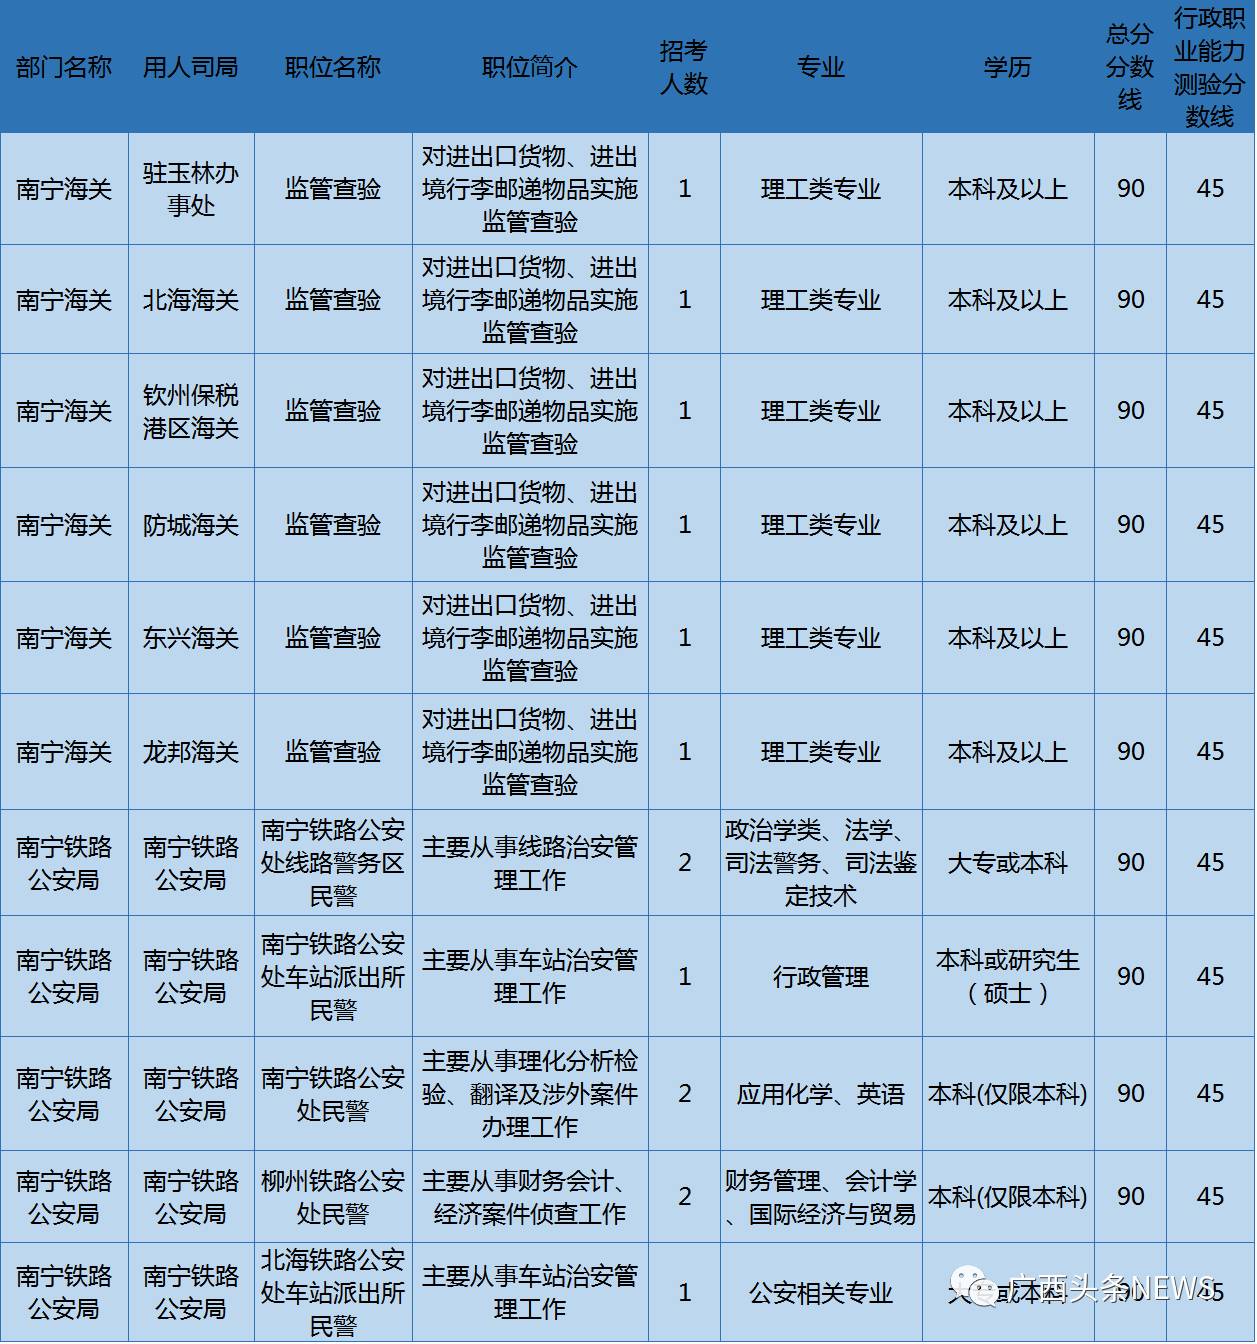 2017年国考补录4127名公务员 广西这些职位空